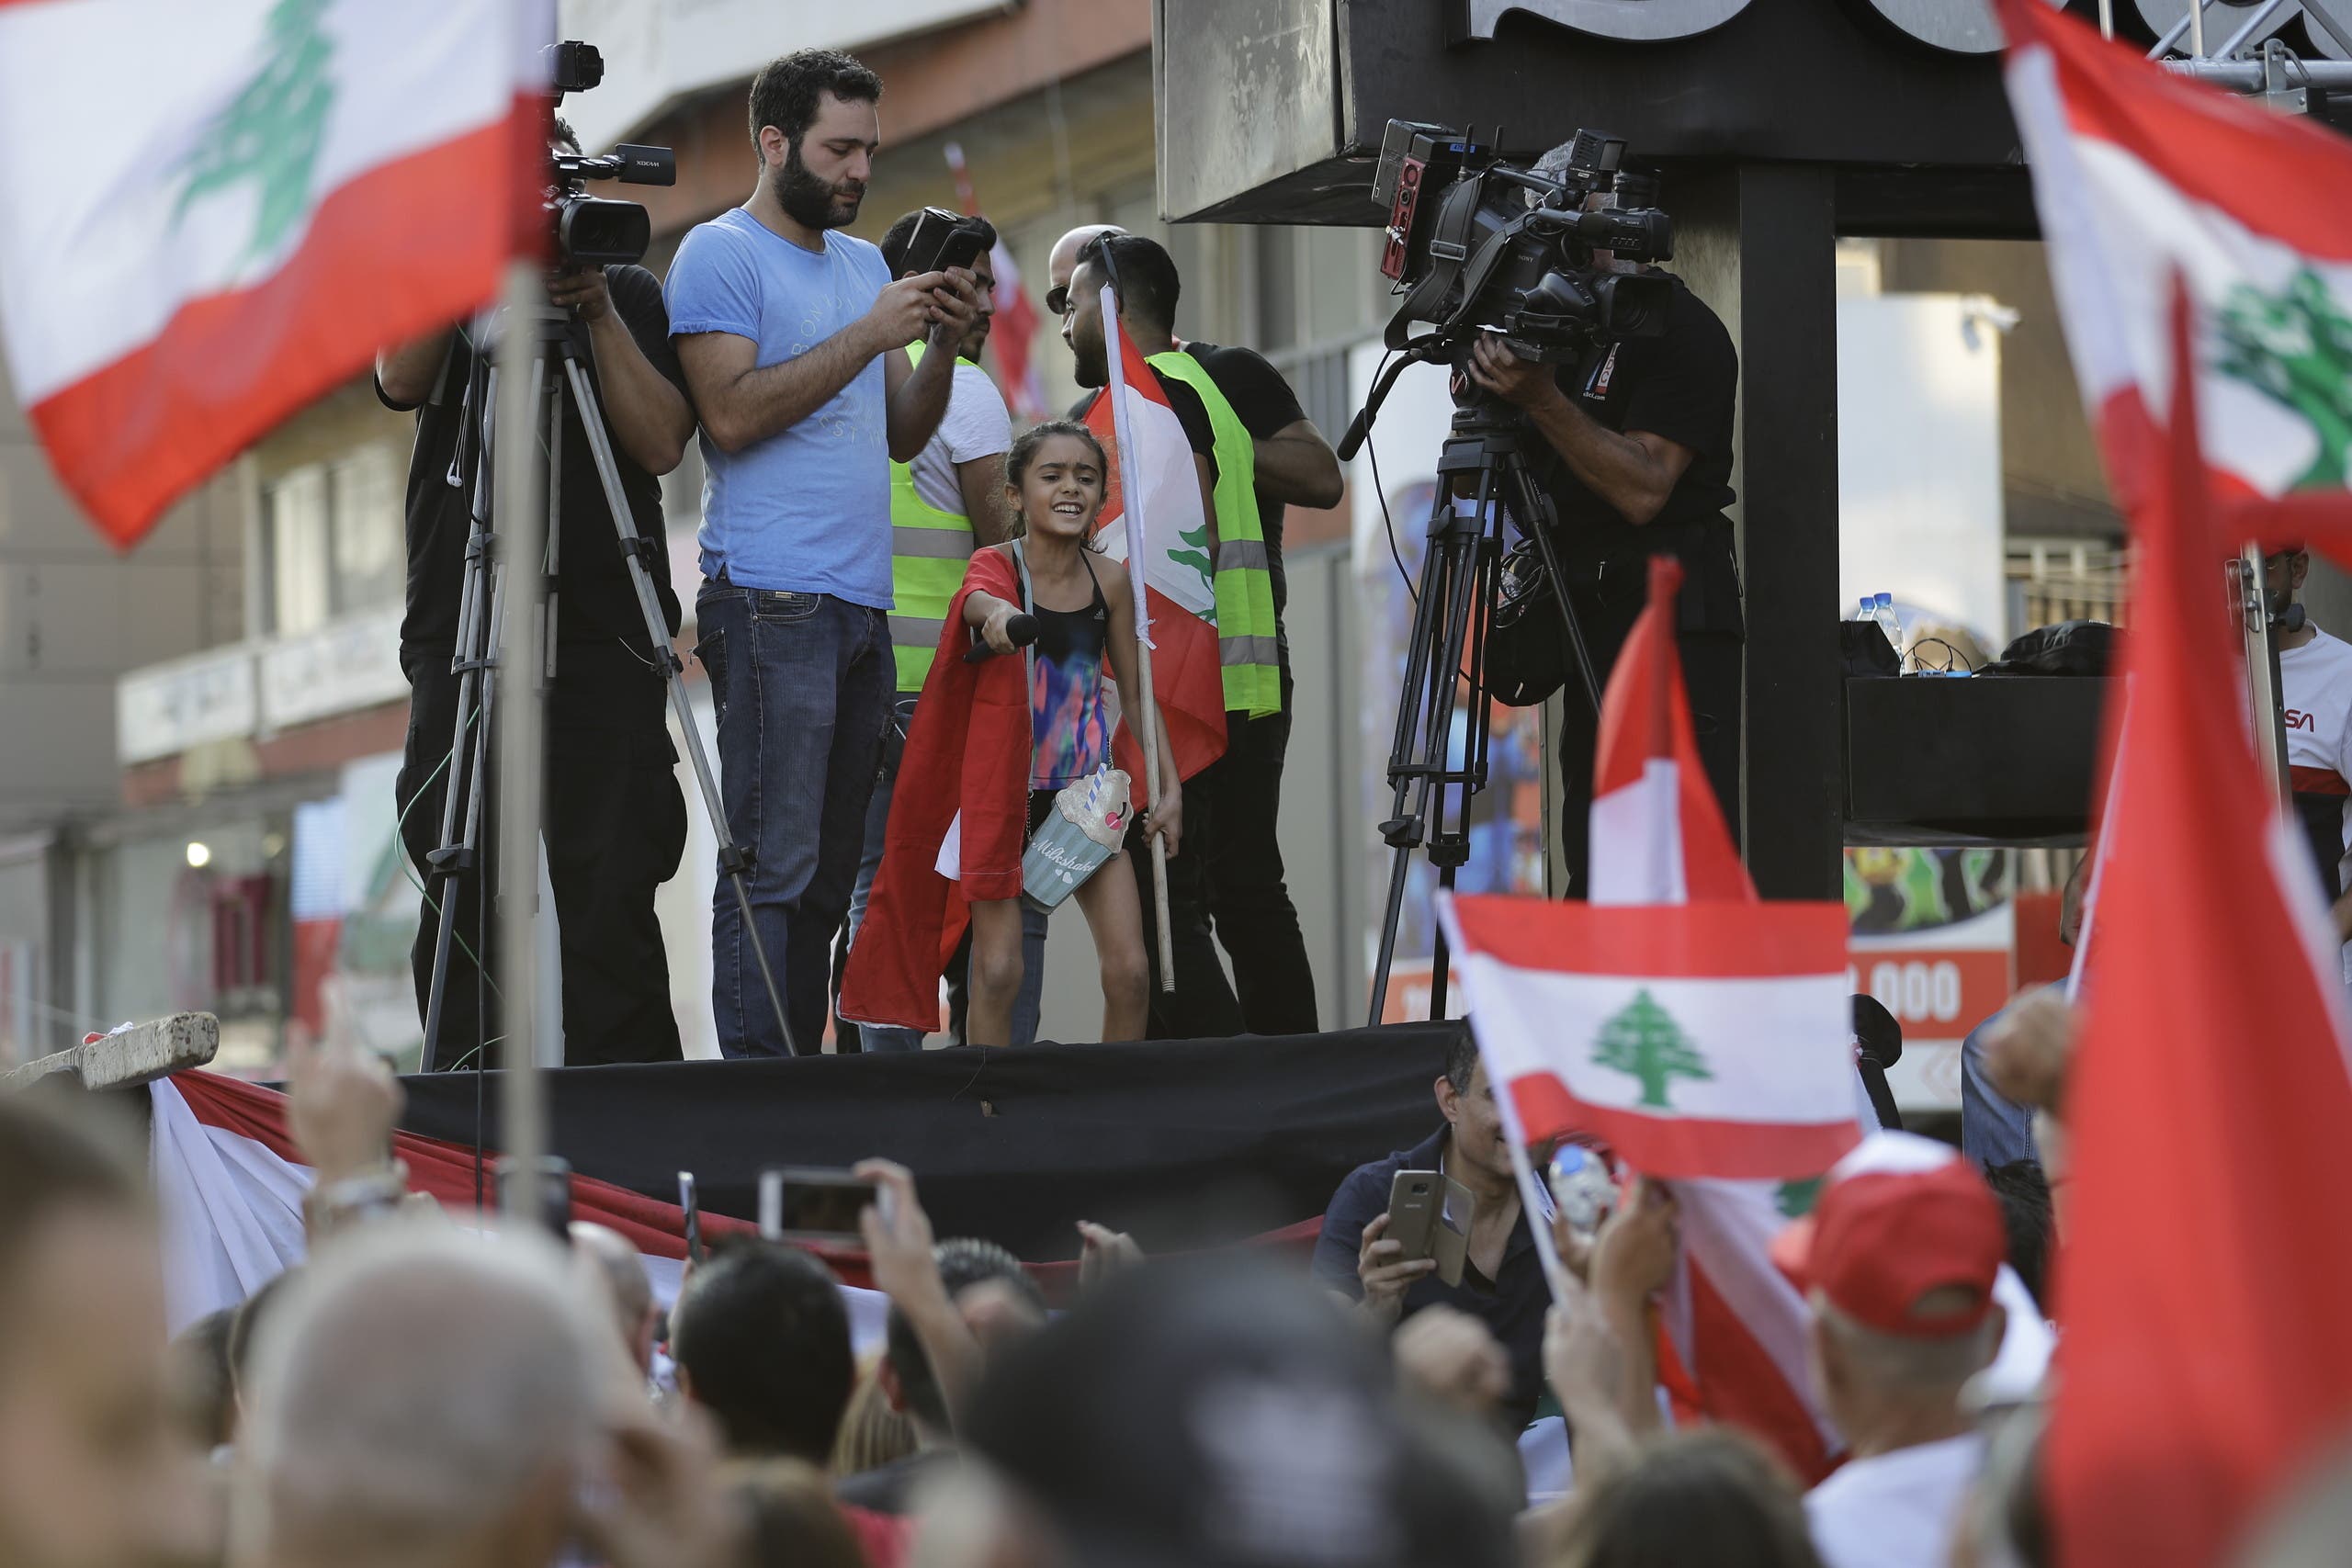 طفلة تصرخ ضد الحكتم على منصة ضمن احاجاجات بيروت